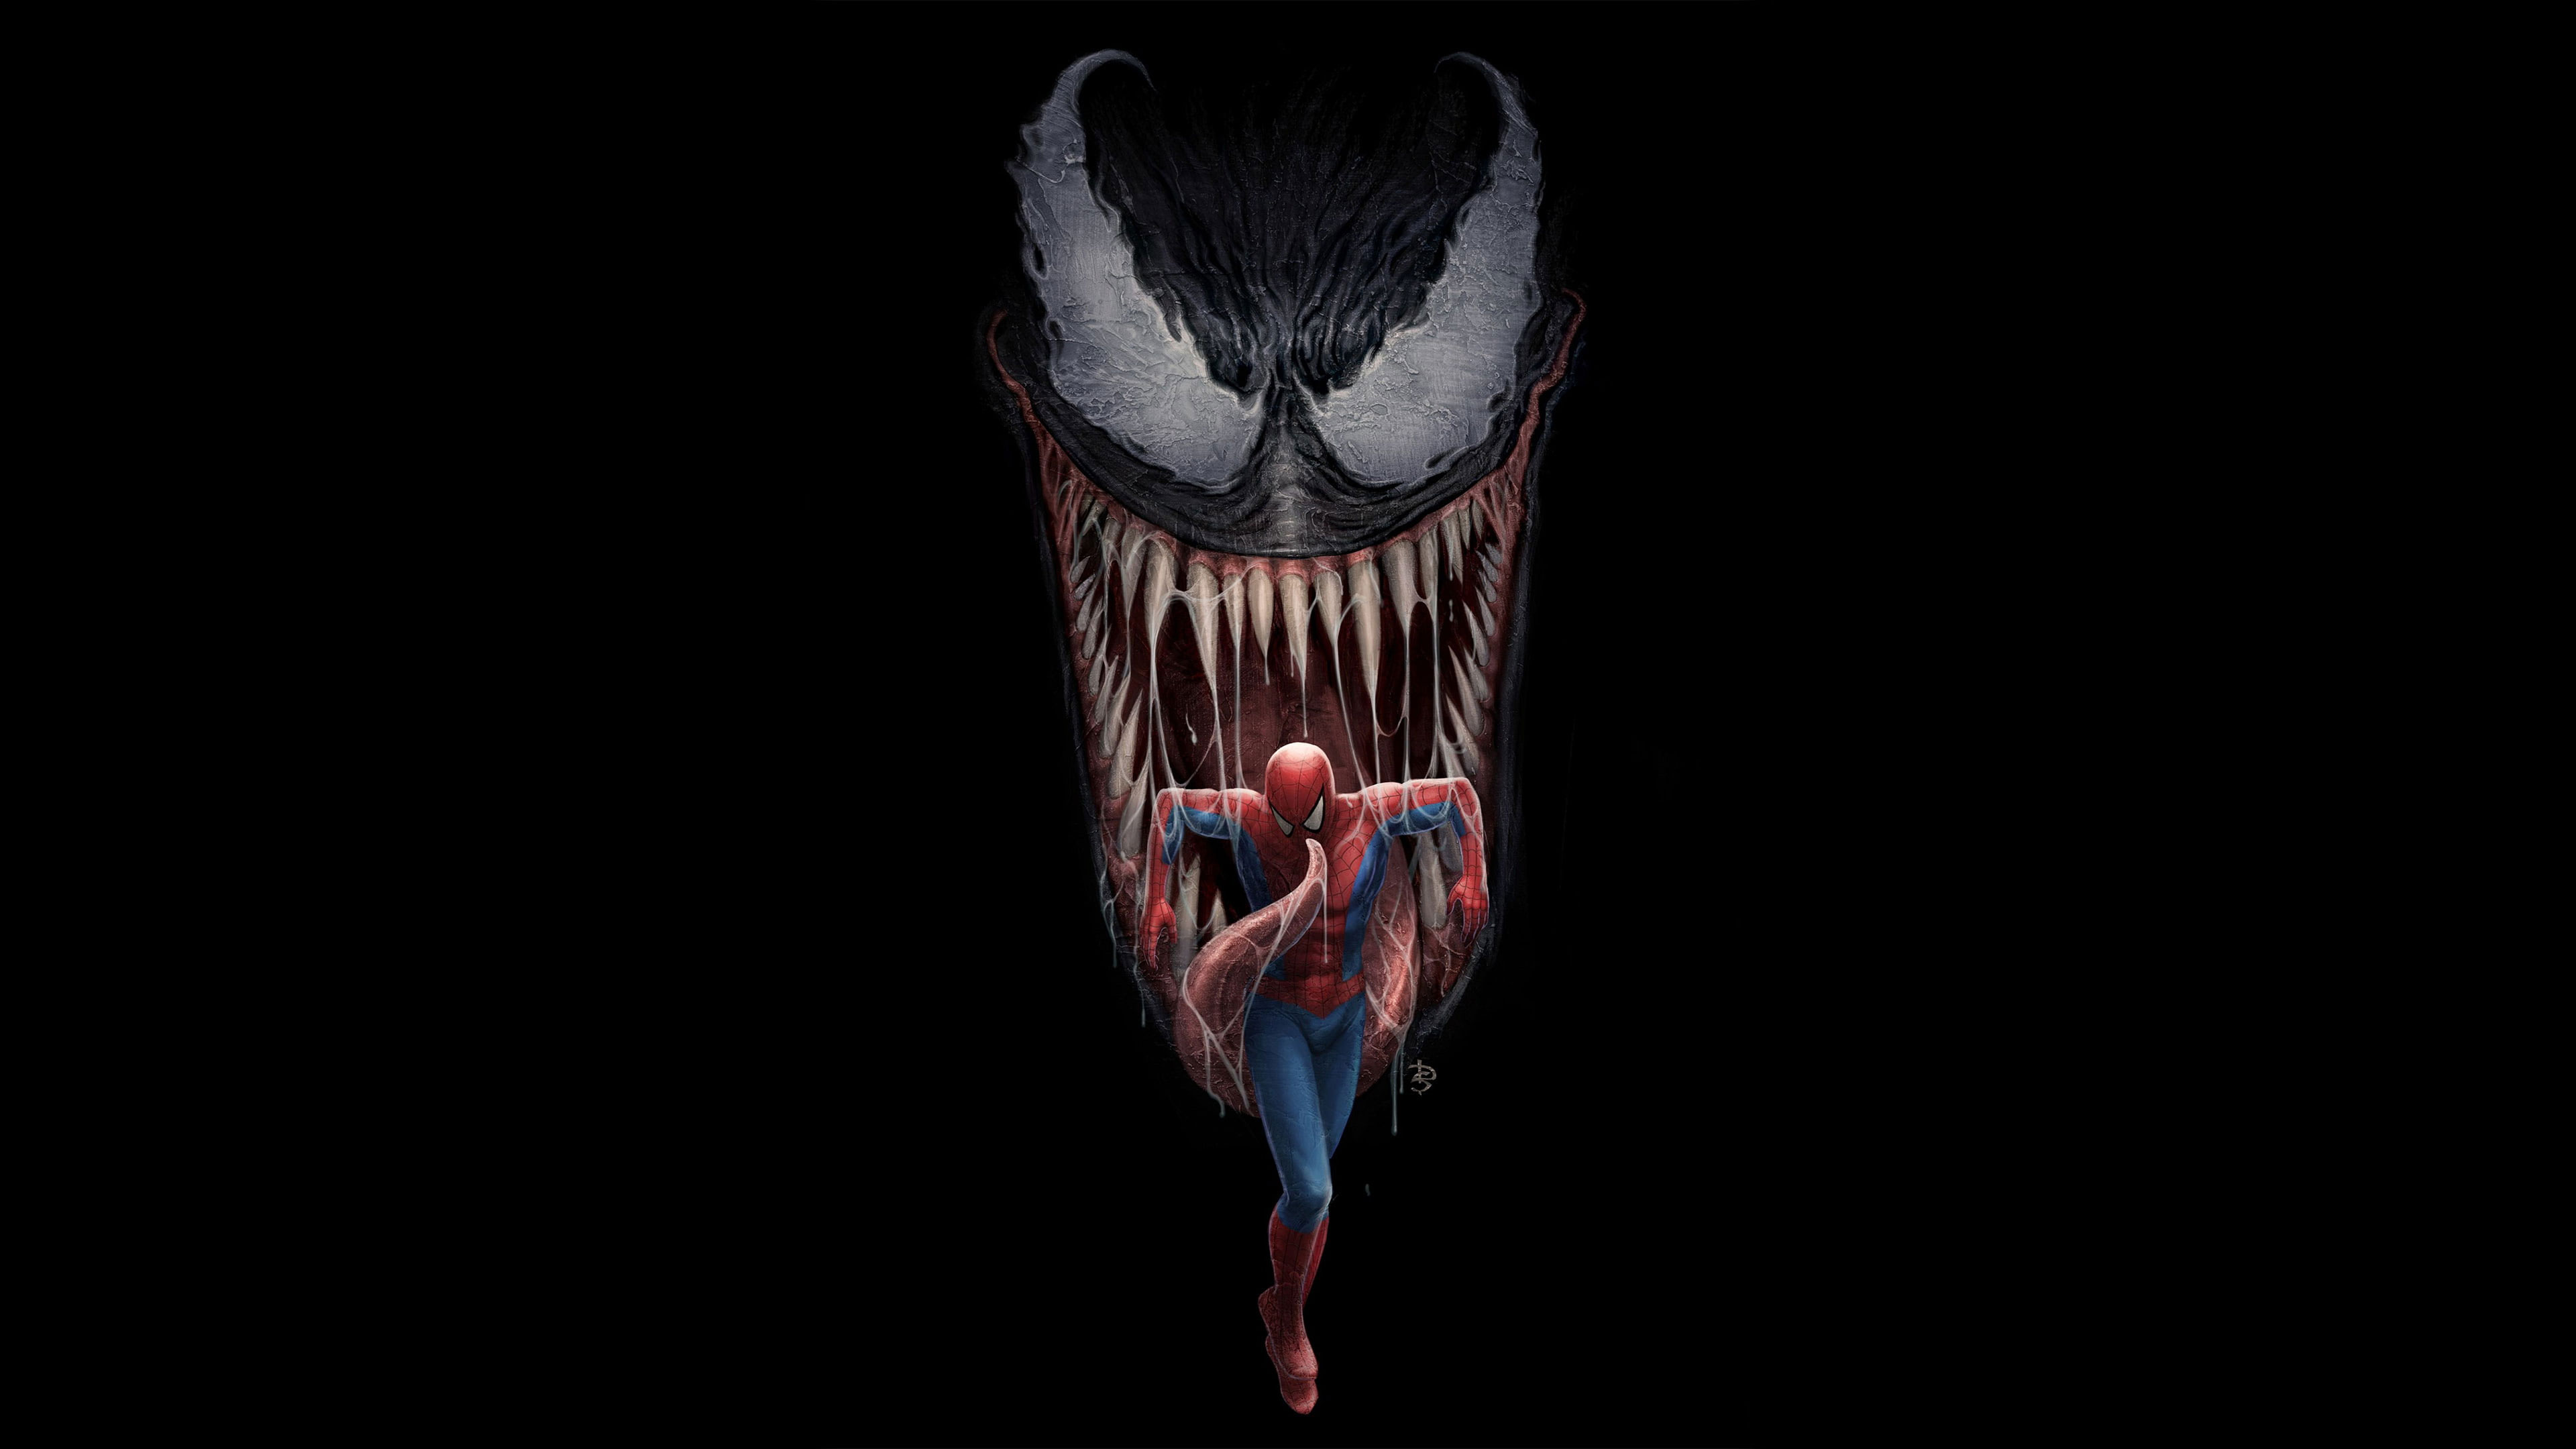 Wallpaper Spiderman, Venom, Artwork, 4k, Hd, Digital Art - Wallpaperforu